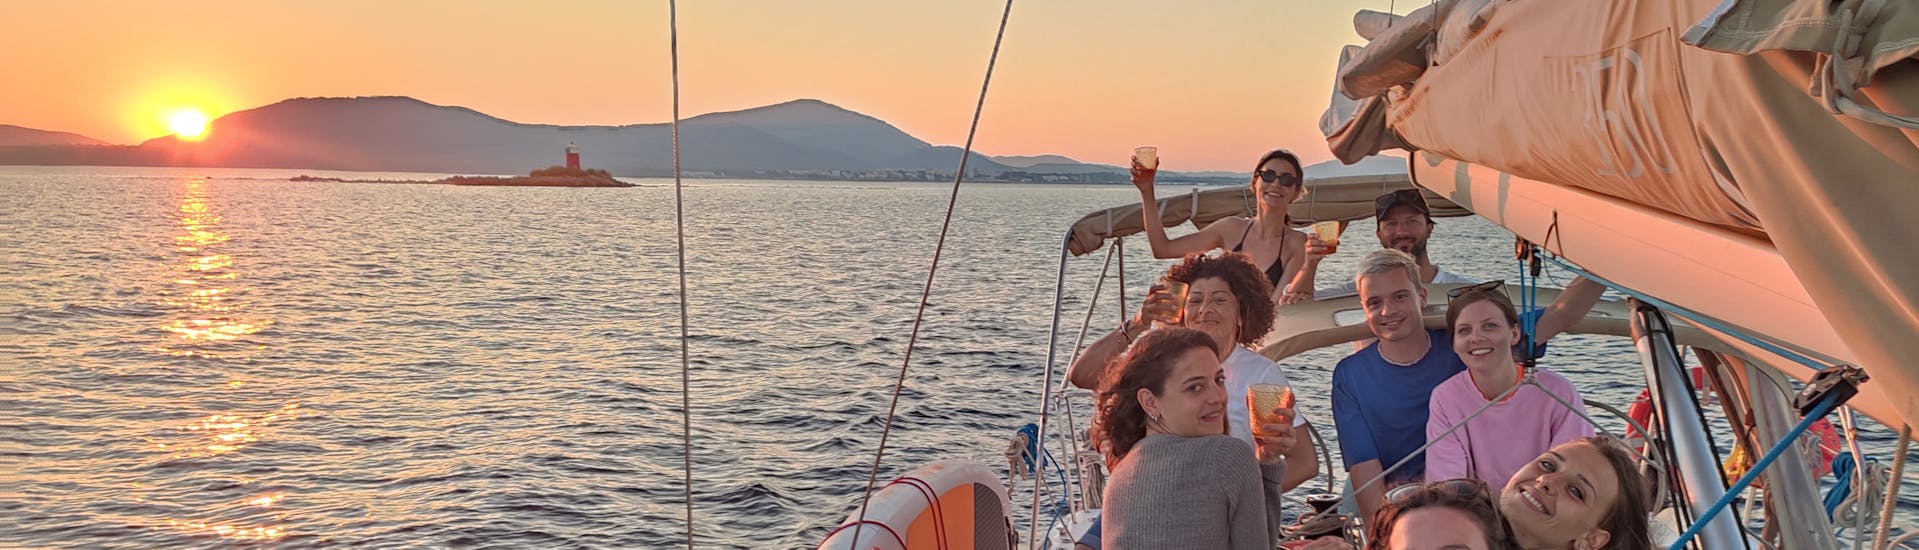 Private Segeltour von Alghero - Baia di Alghero mit Schwimmen & Sonnenuntergang.